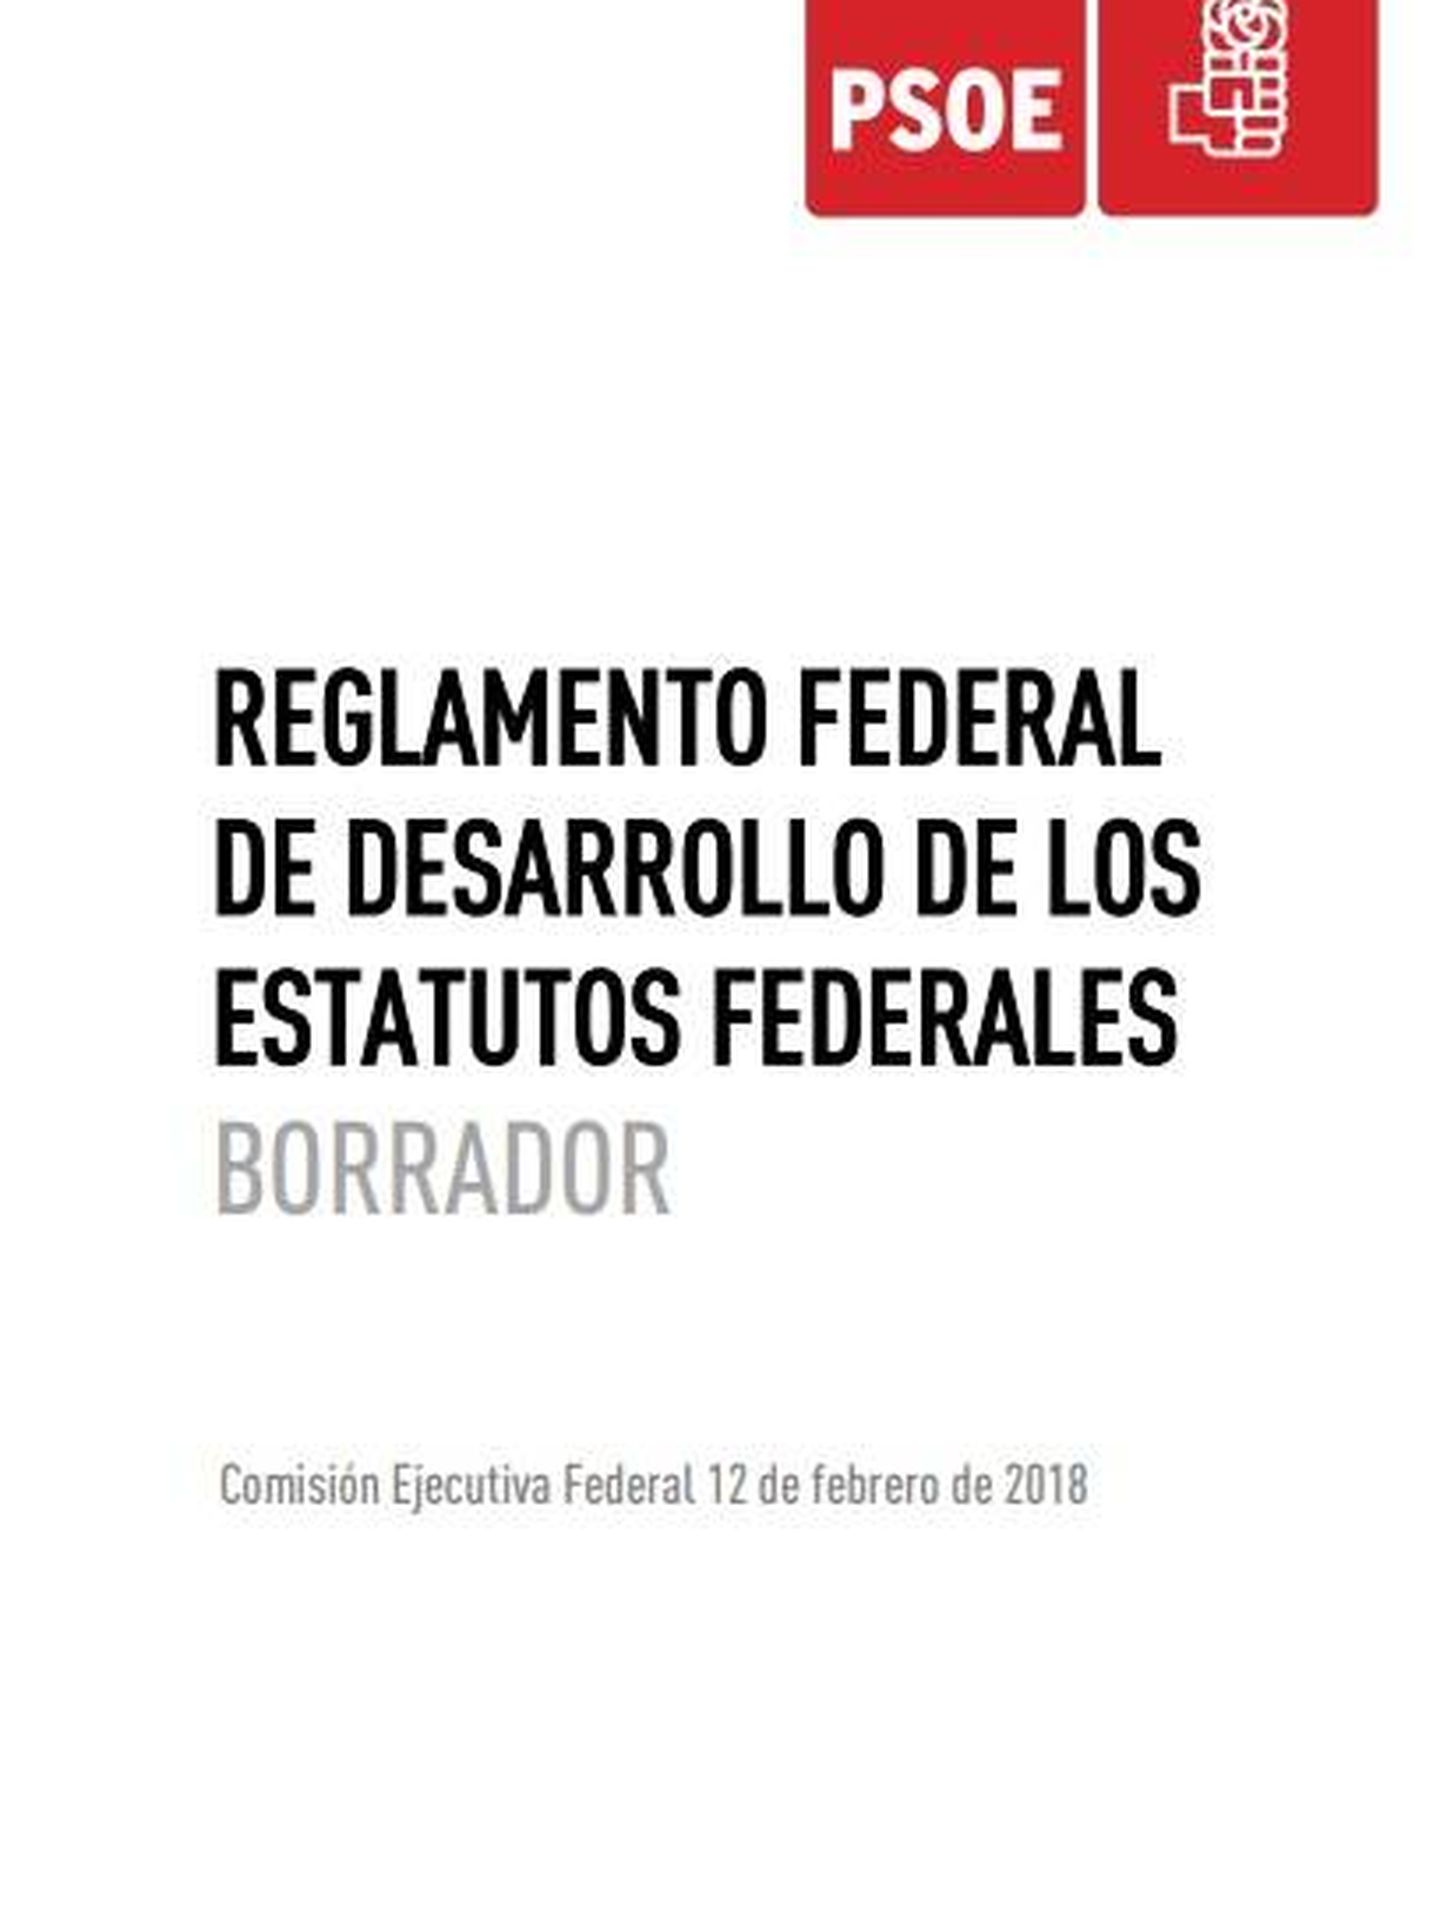 Pincha aquí para consultar en PDF el borrador de reglamento del PSOE aprobado por la ejecutiva de Pedro Sánchez. (EC)